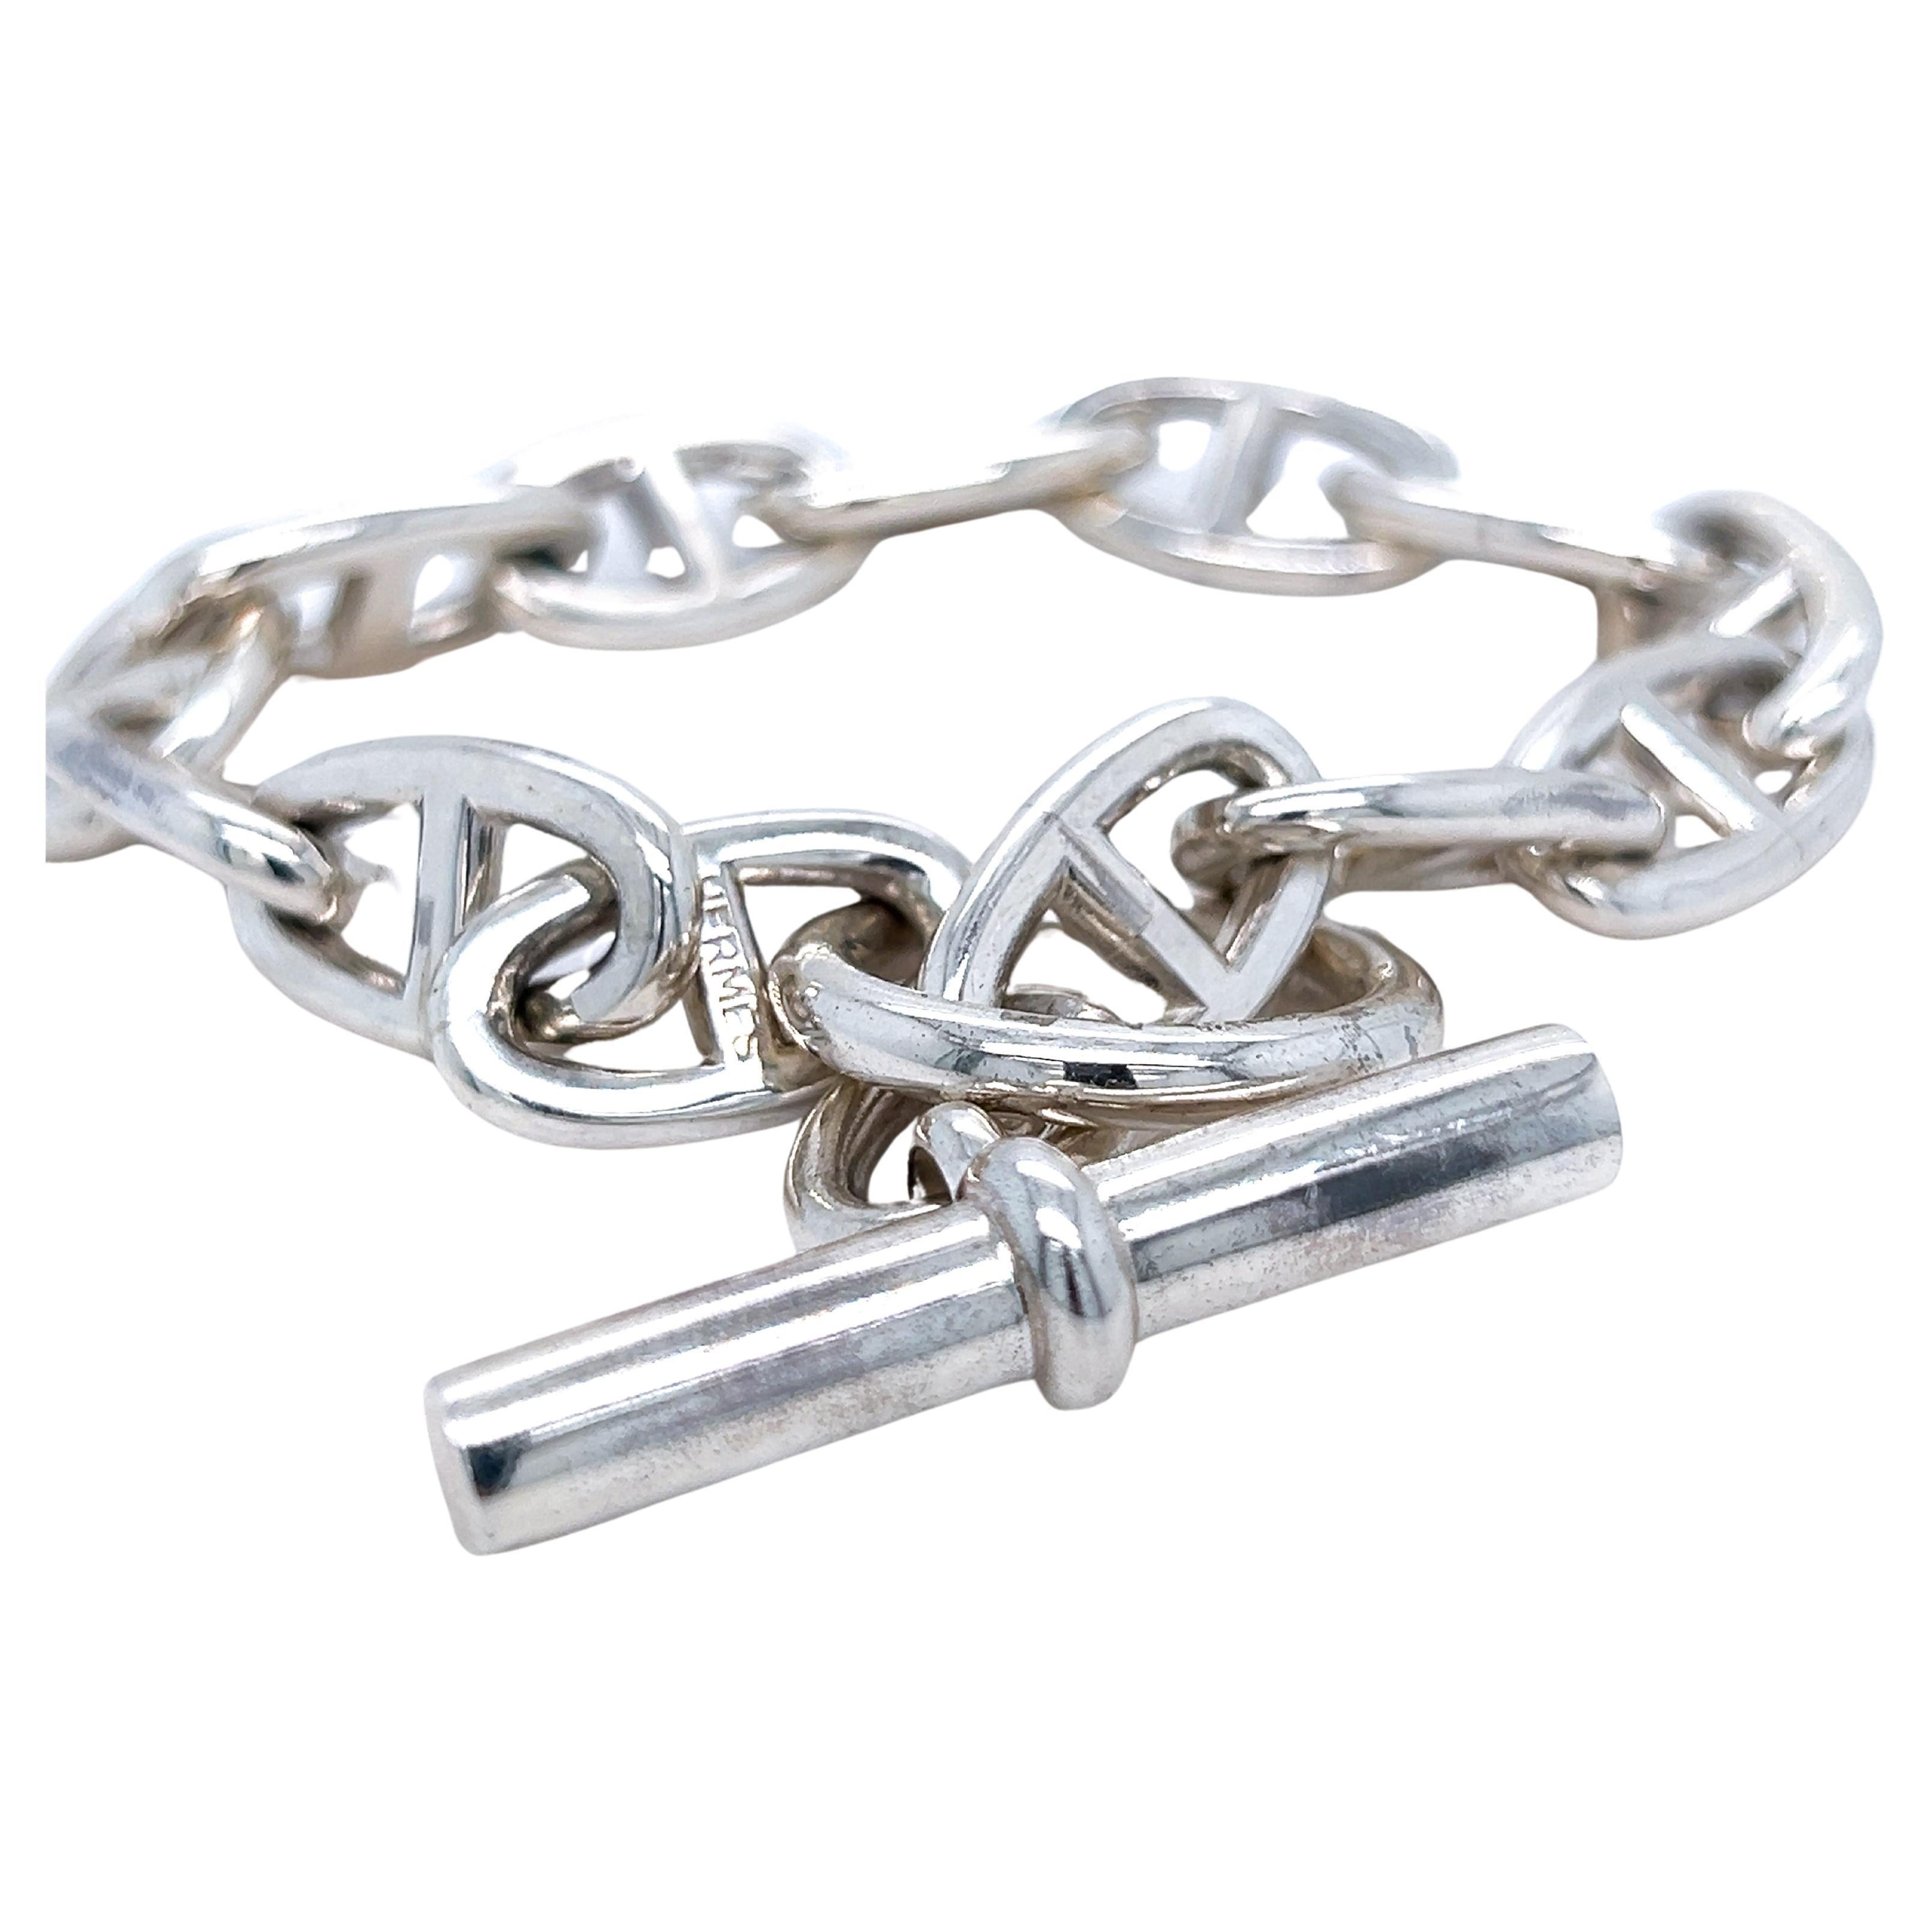 Hermès Chaine D'ancre Sterling Silver Unisex Bracelet, circa 1995